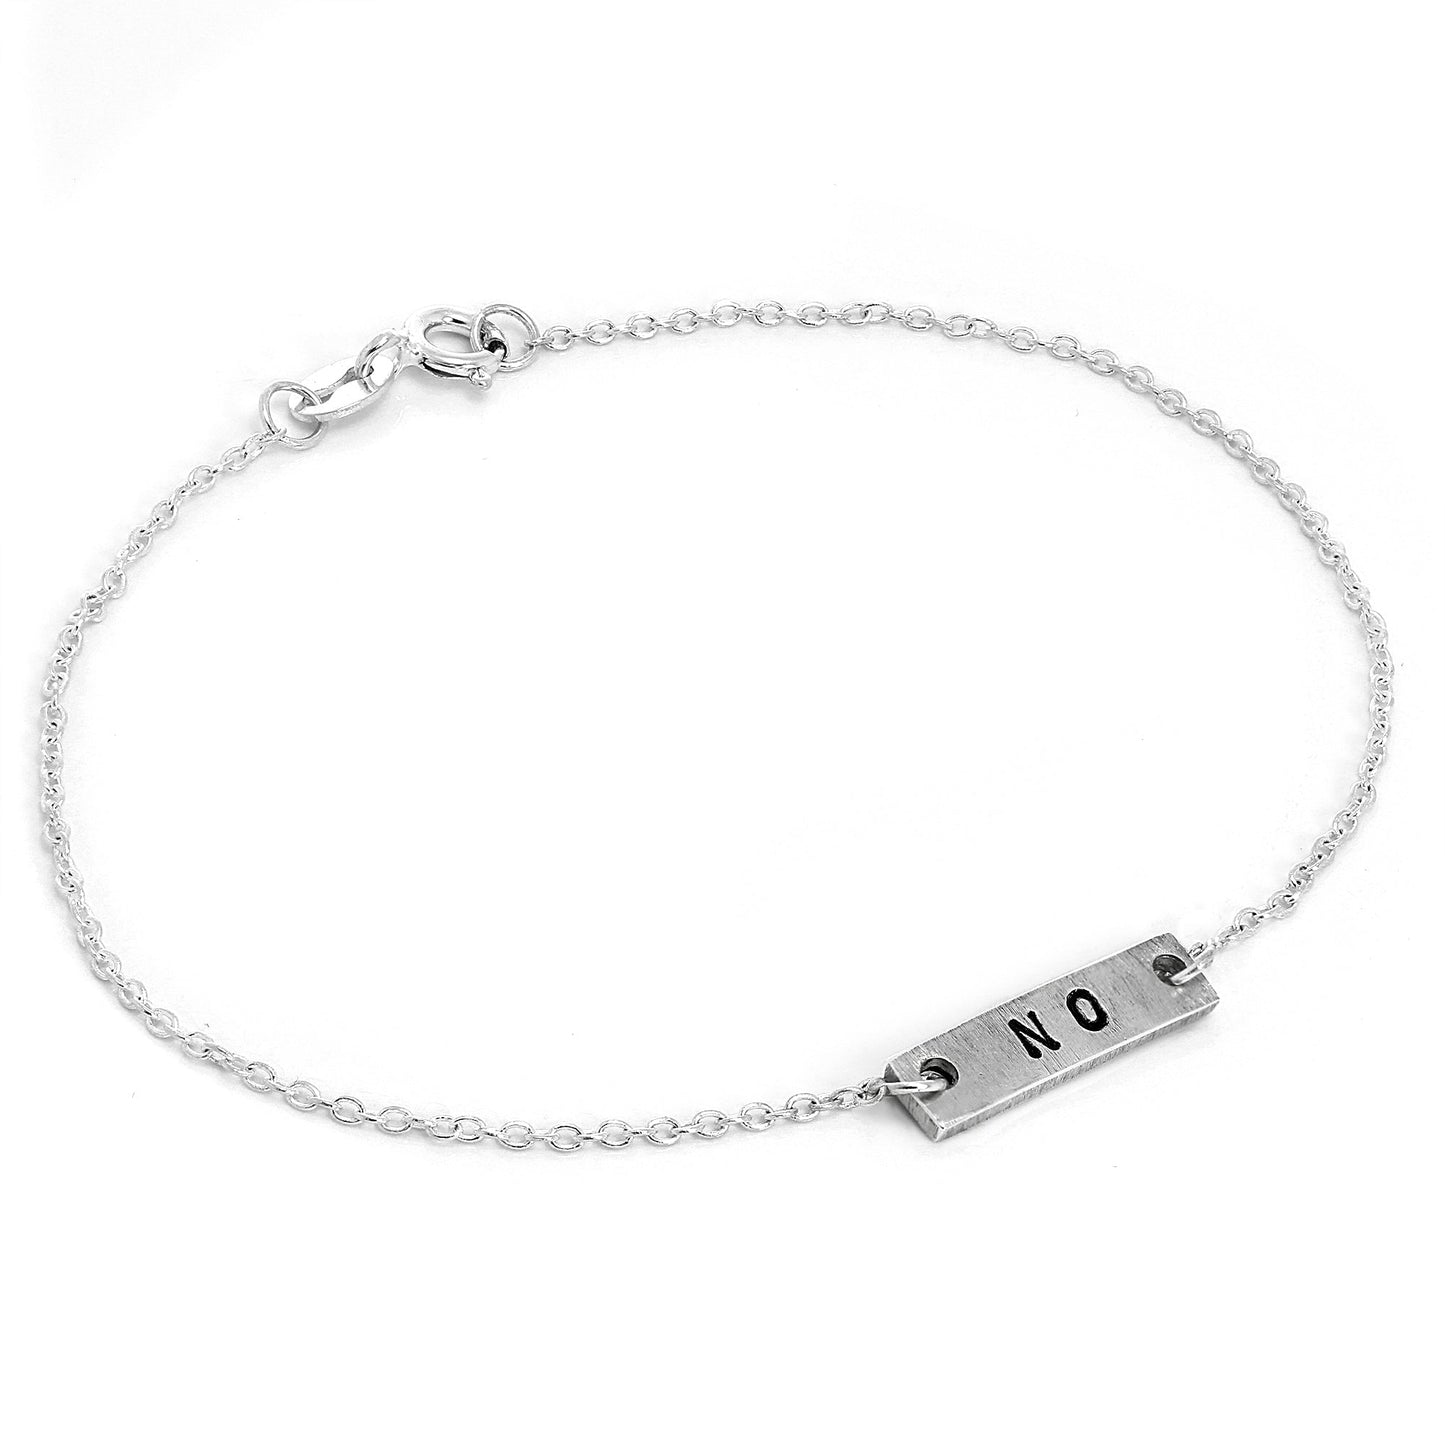 Personalised Sterling Silver Bar Bracelet Anklet